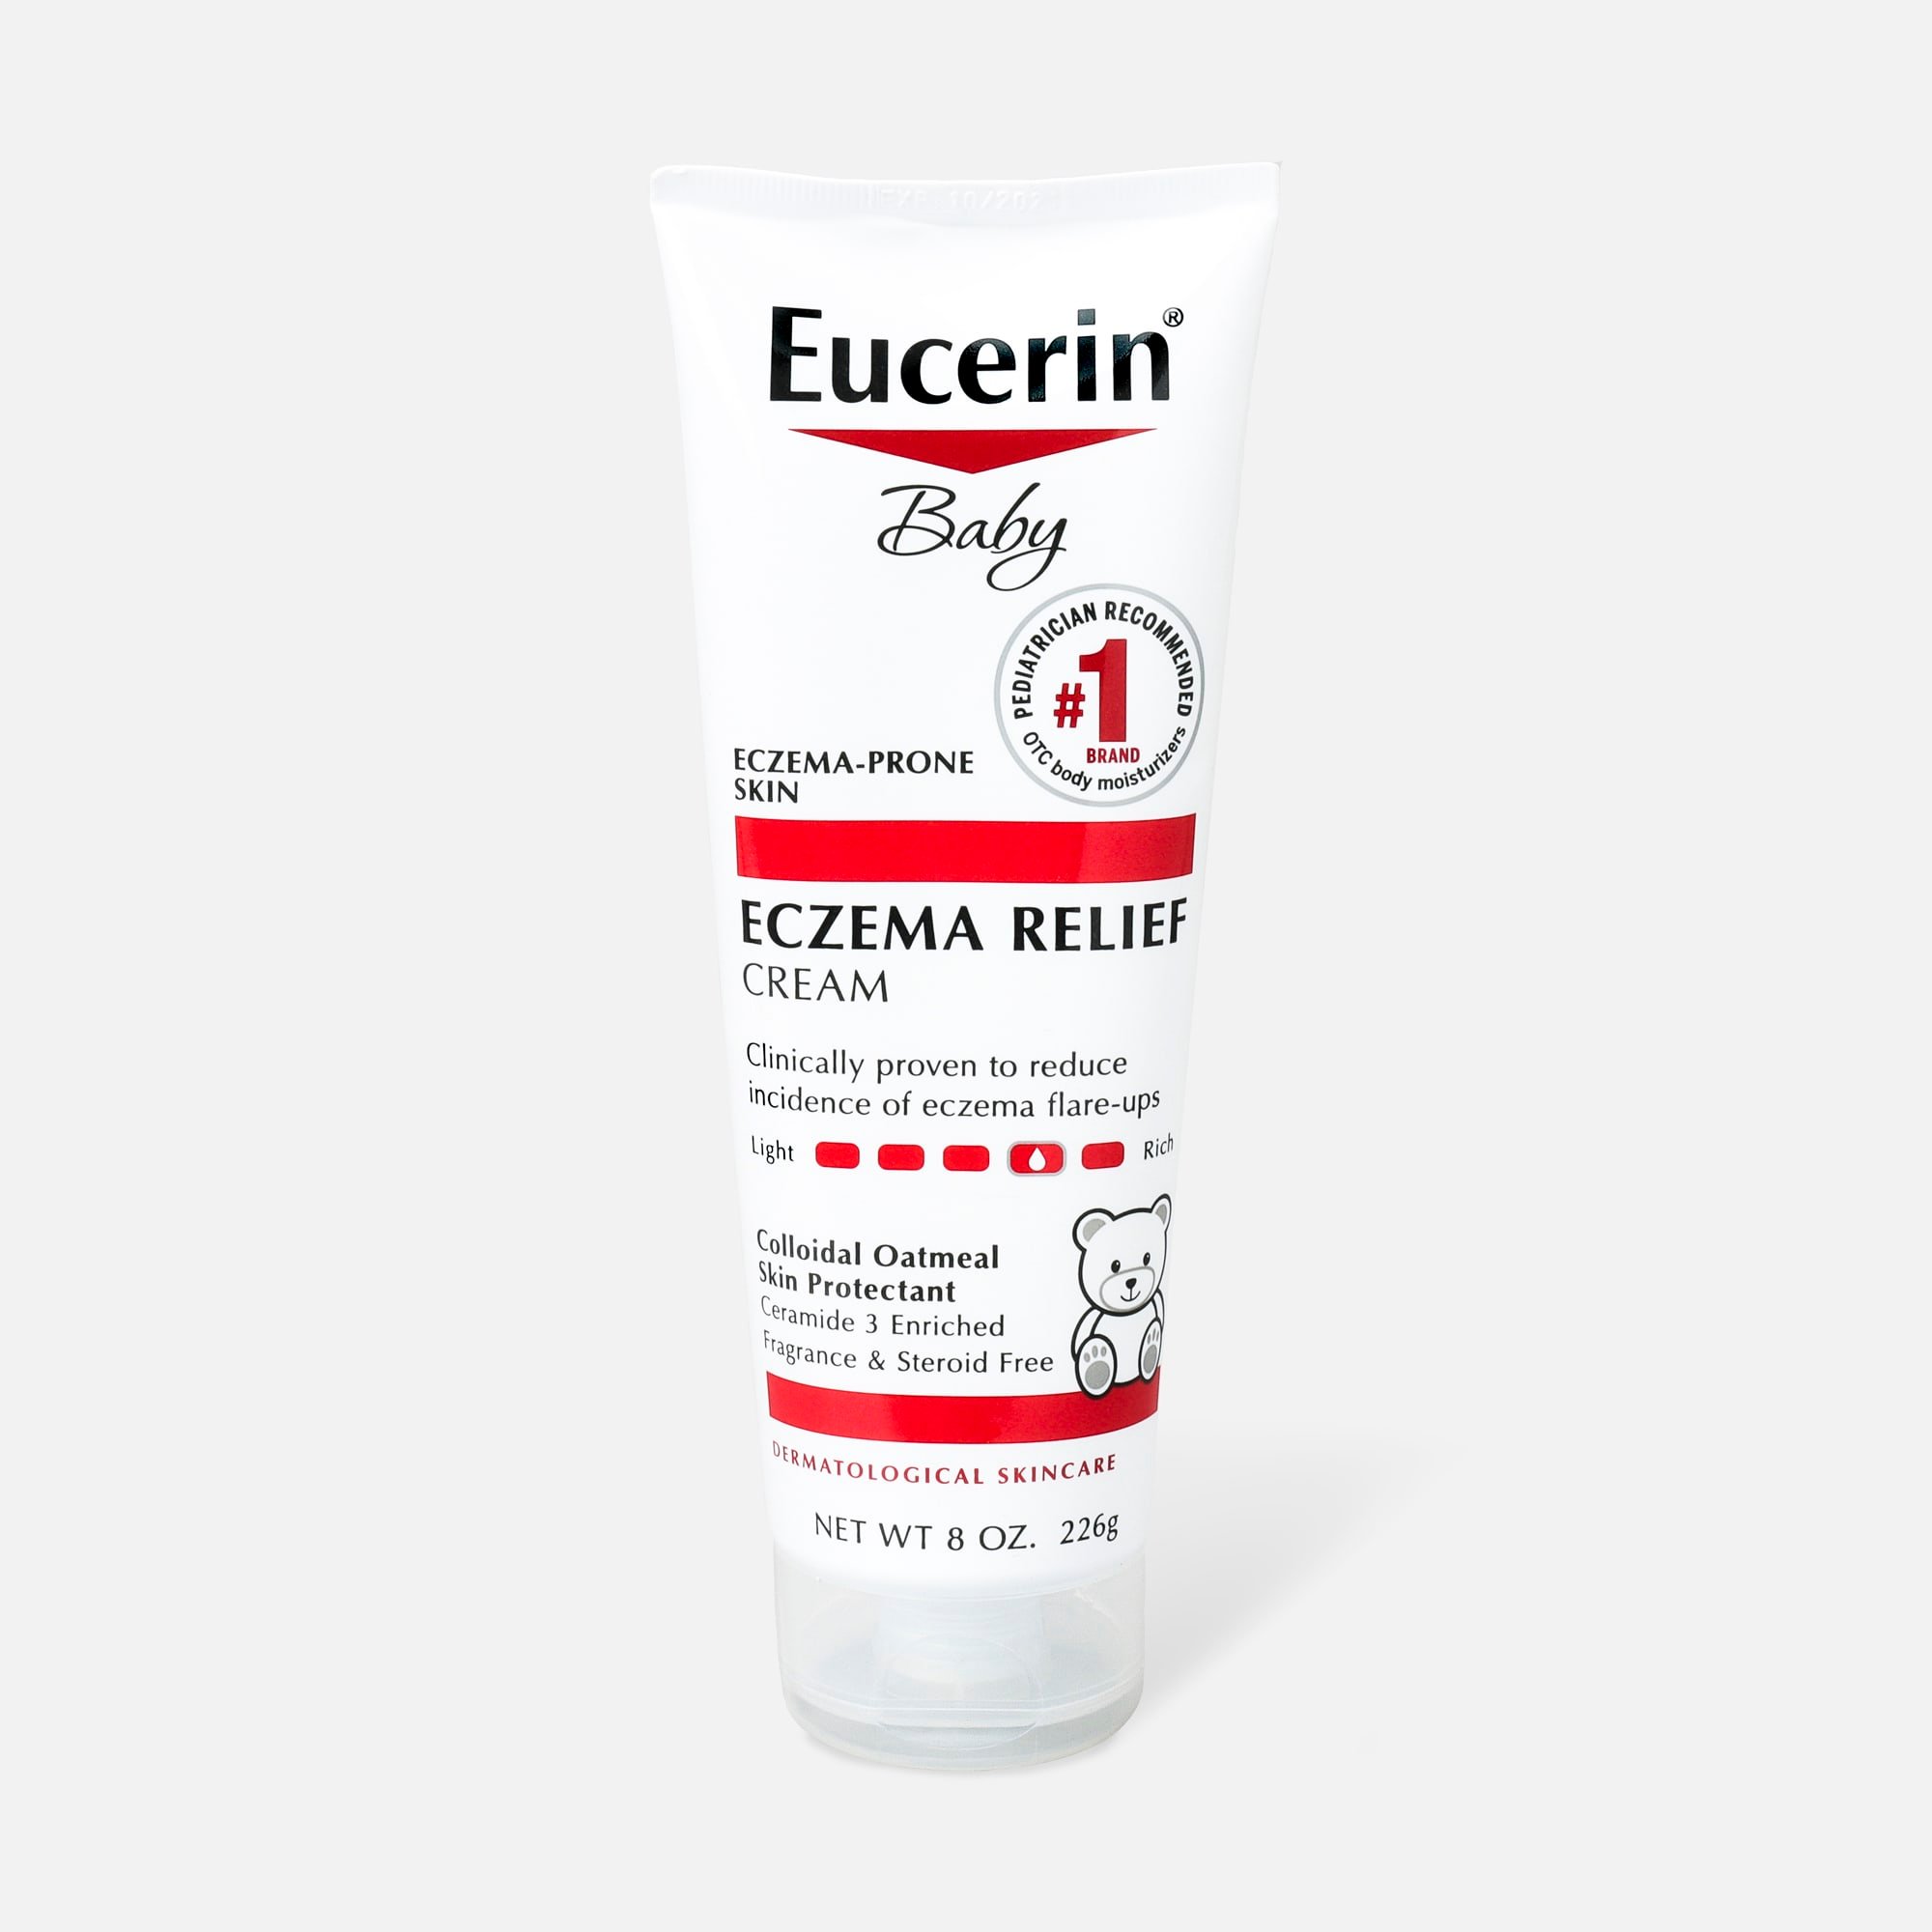 Eucerin Baby Eczema Cream, 8oz.